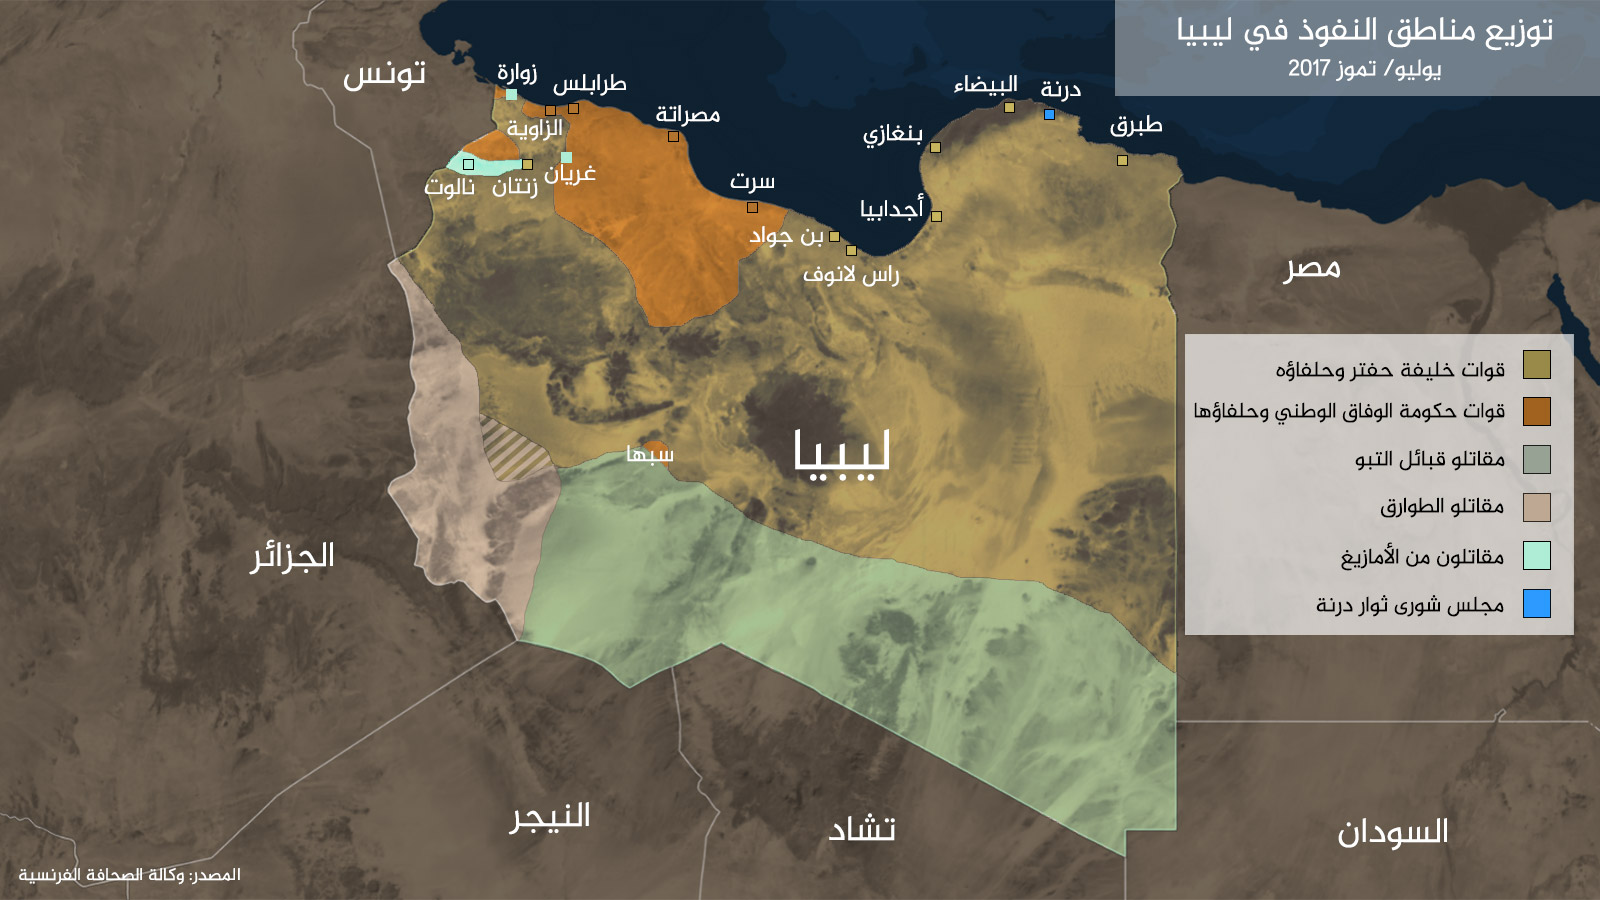 ‪خريطة تبين توزيع مناطق النفوذ في ليبيا حتى يوليو/تموز 2017‬ (الجزيرة)